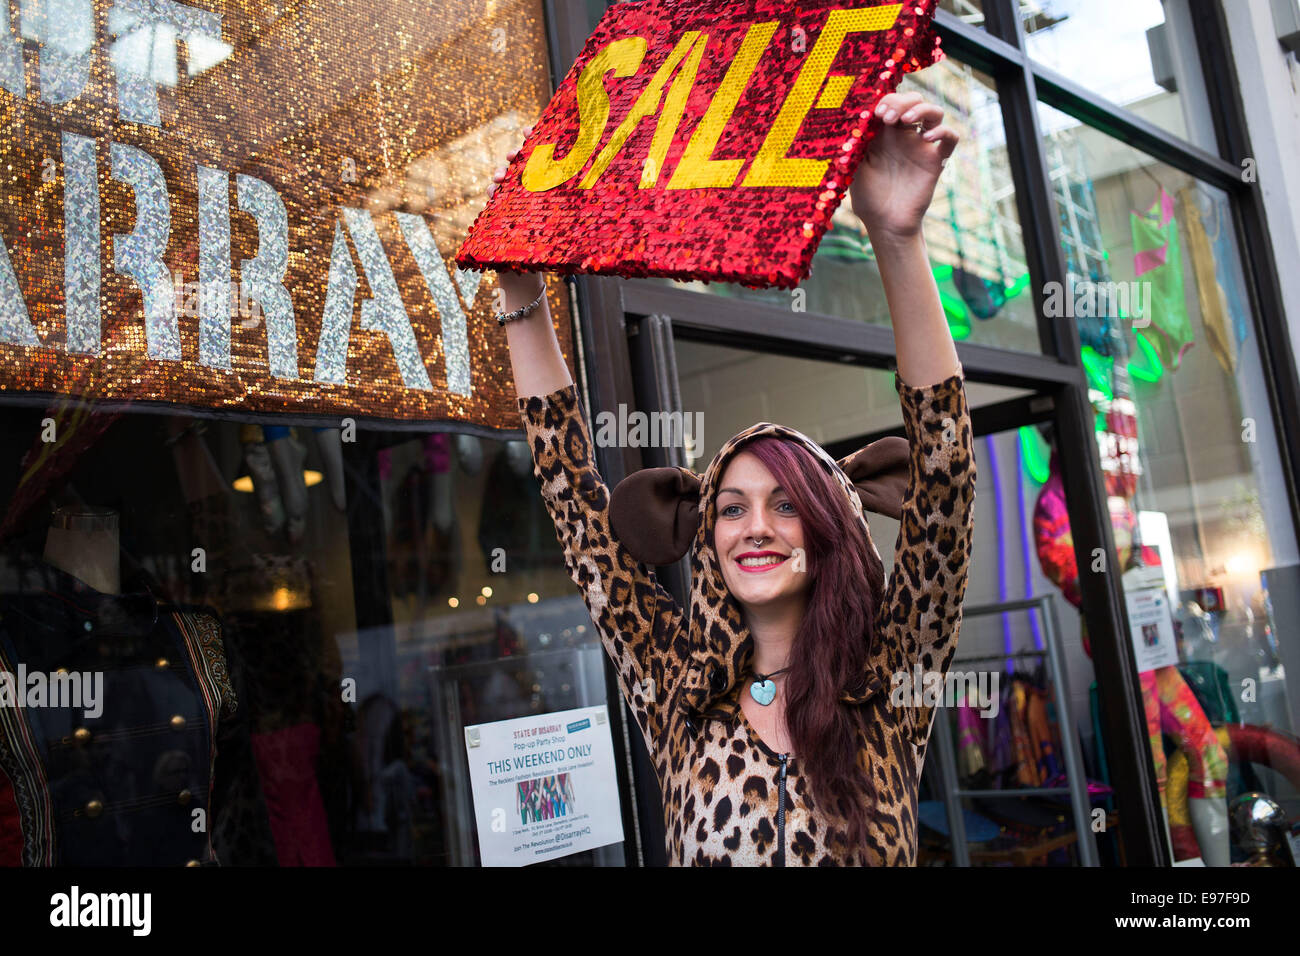 Habillé en femme leopard publicité une vente à l'état de désarroi shop. Old Truman Brewery, Brick Lane, Londres, Royaume-Uni. Banque D'Images